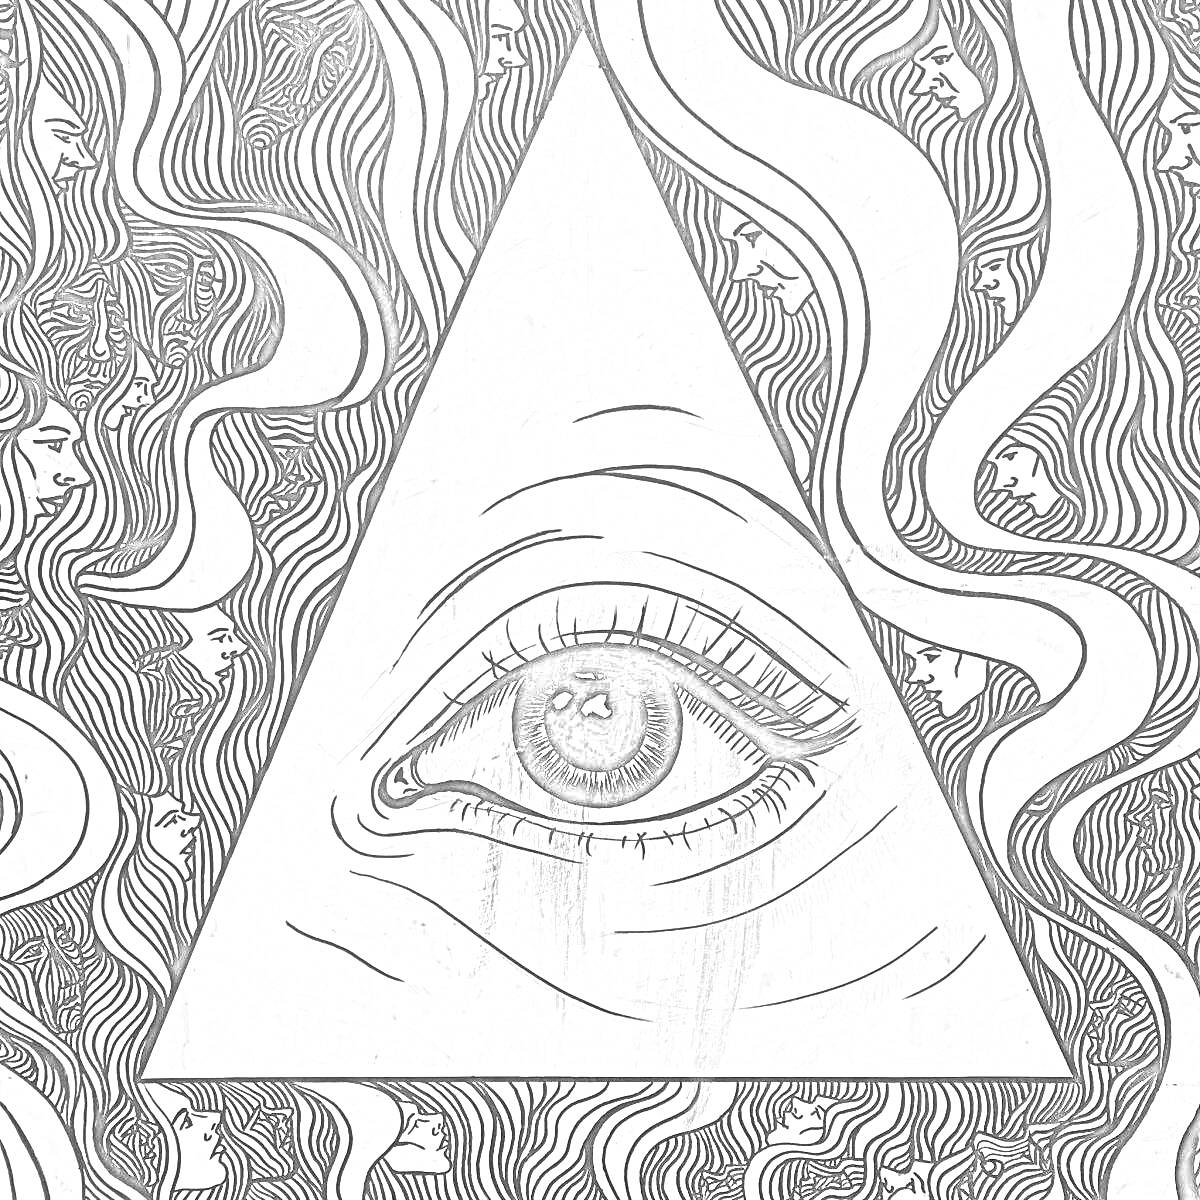 Раскраска Глаз в треугольнике с рисунками лиц и завитками в волосах